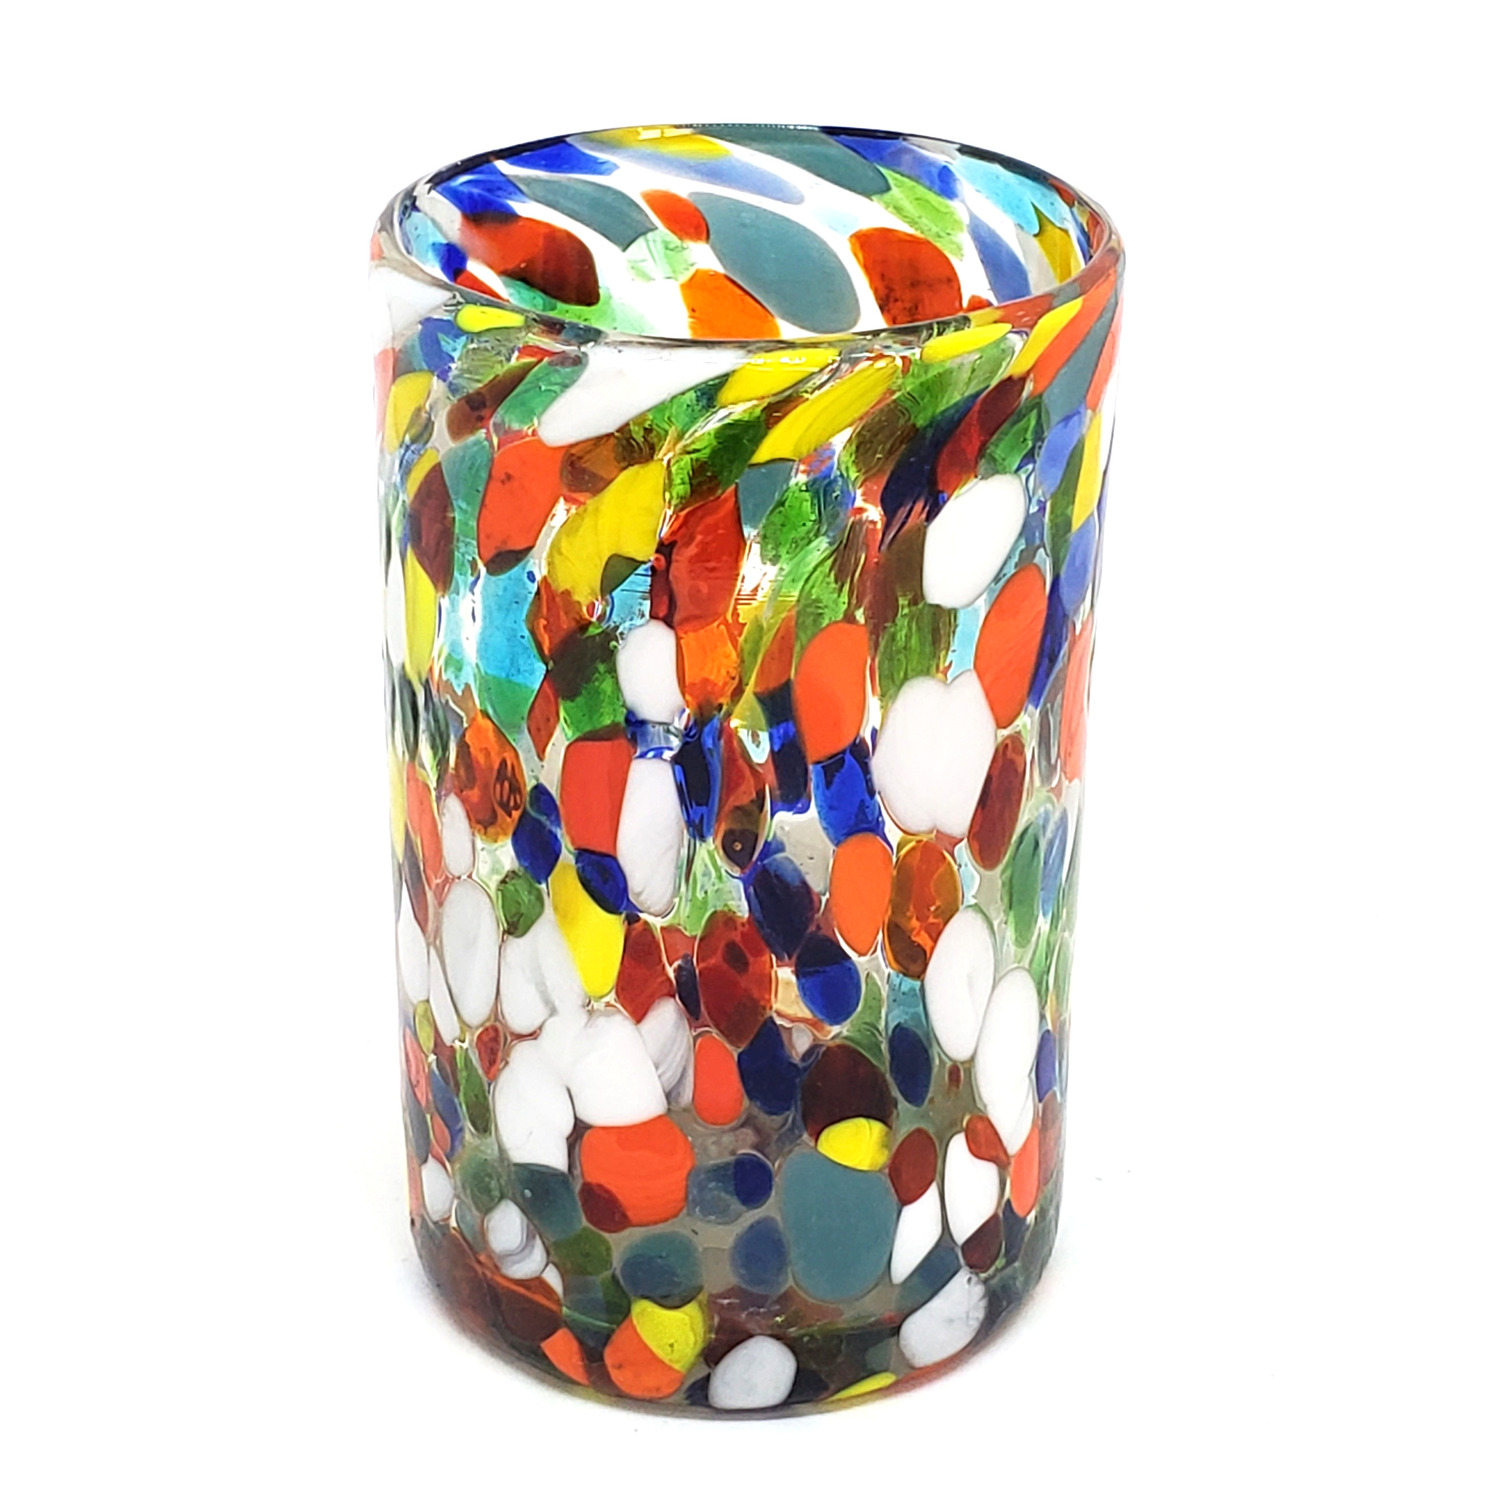 Novedades / Juego de 6 vasos grandes 'Confeti Carnaval' / Deje entrar a la primavera en su casa con éste colorido juego de vasos. El decorado con vidrio multicolor los hace resaltar en cualquier lugar.